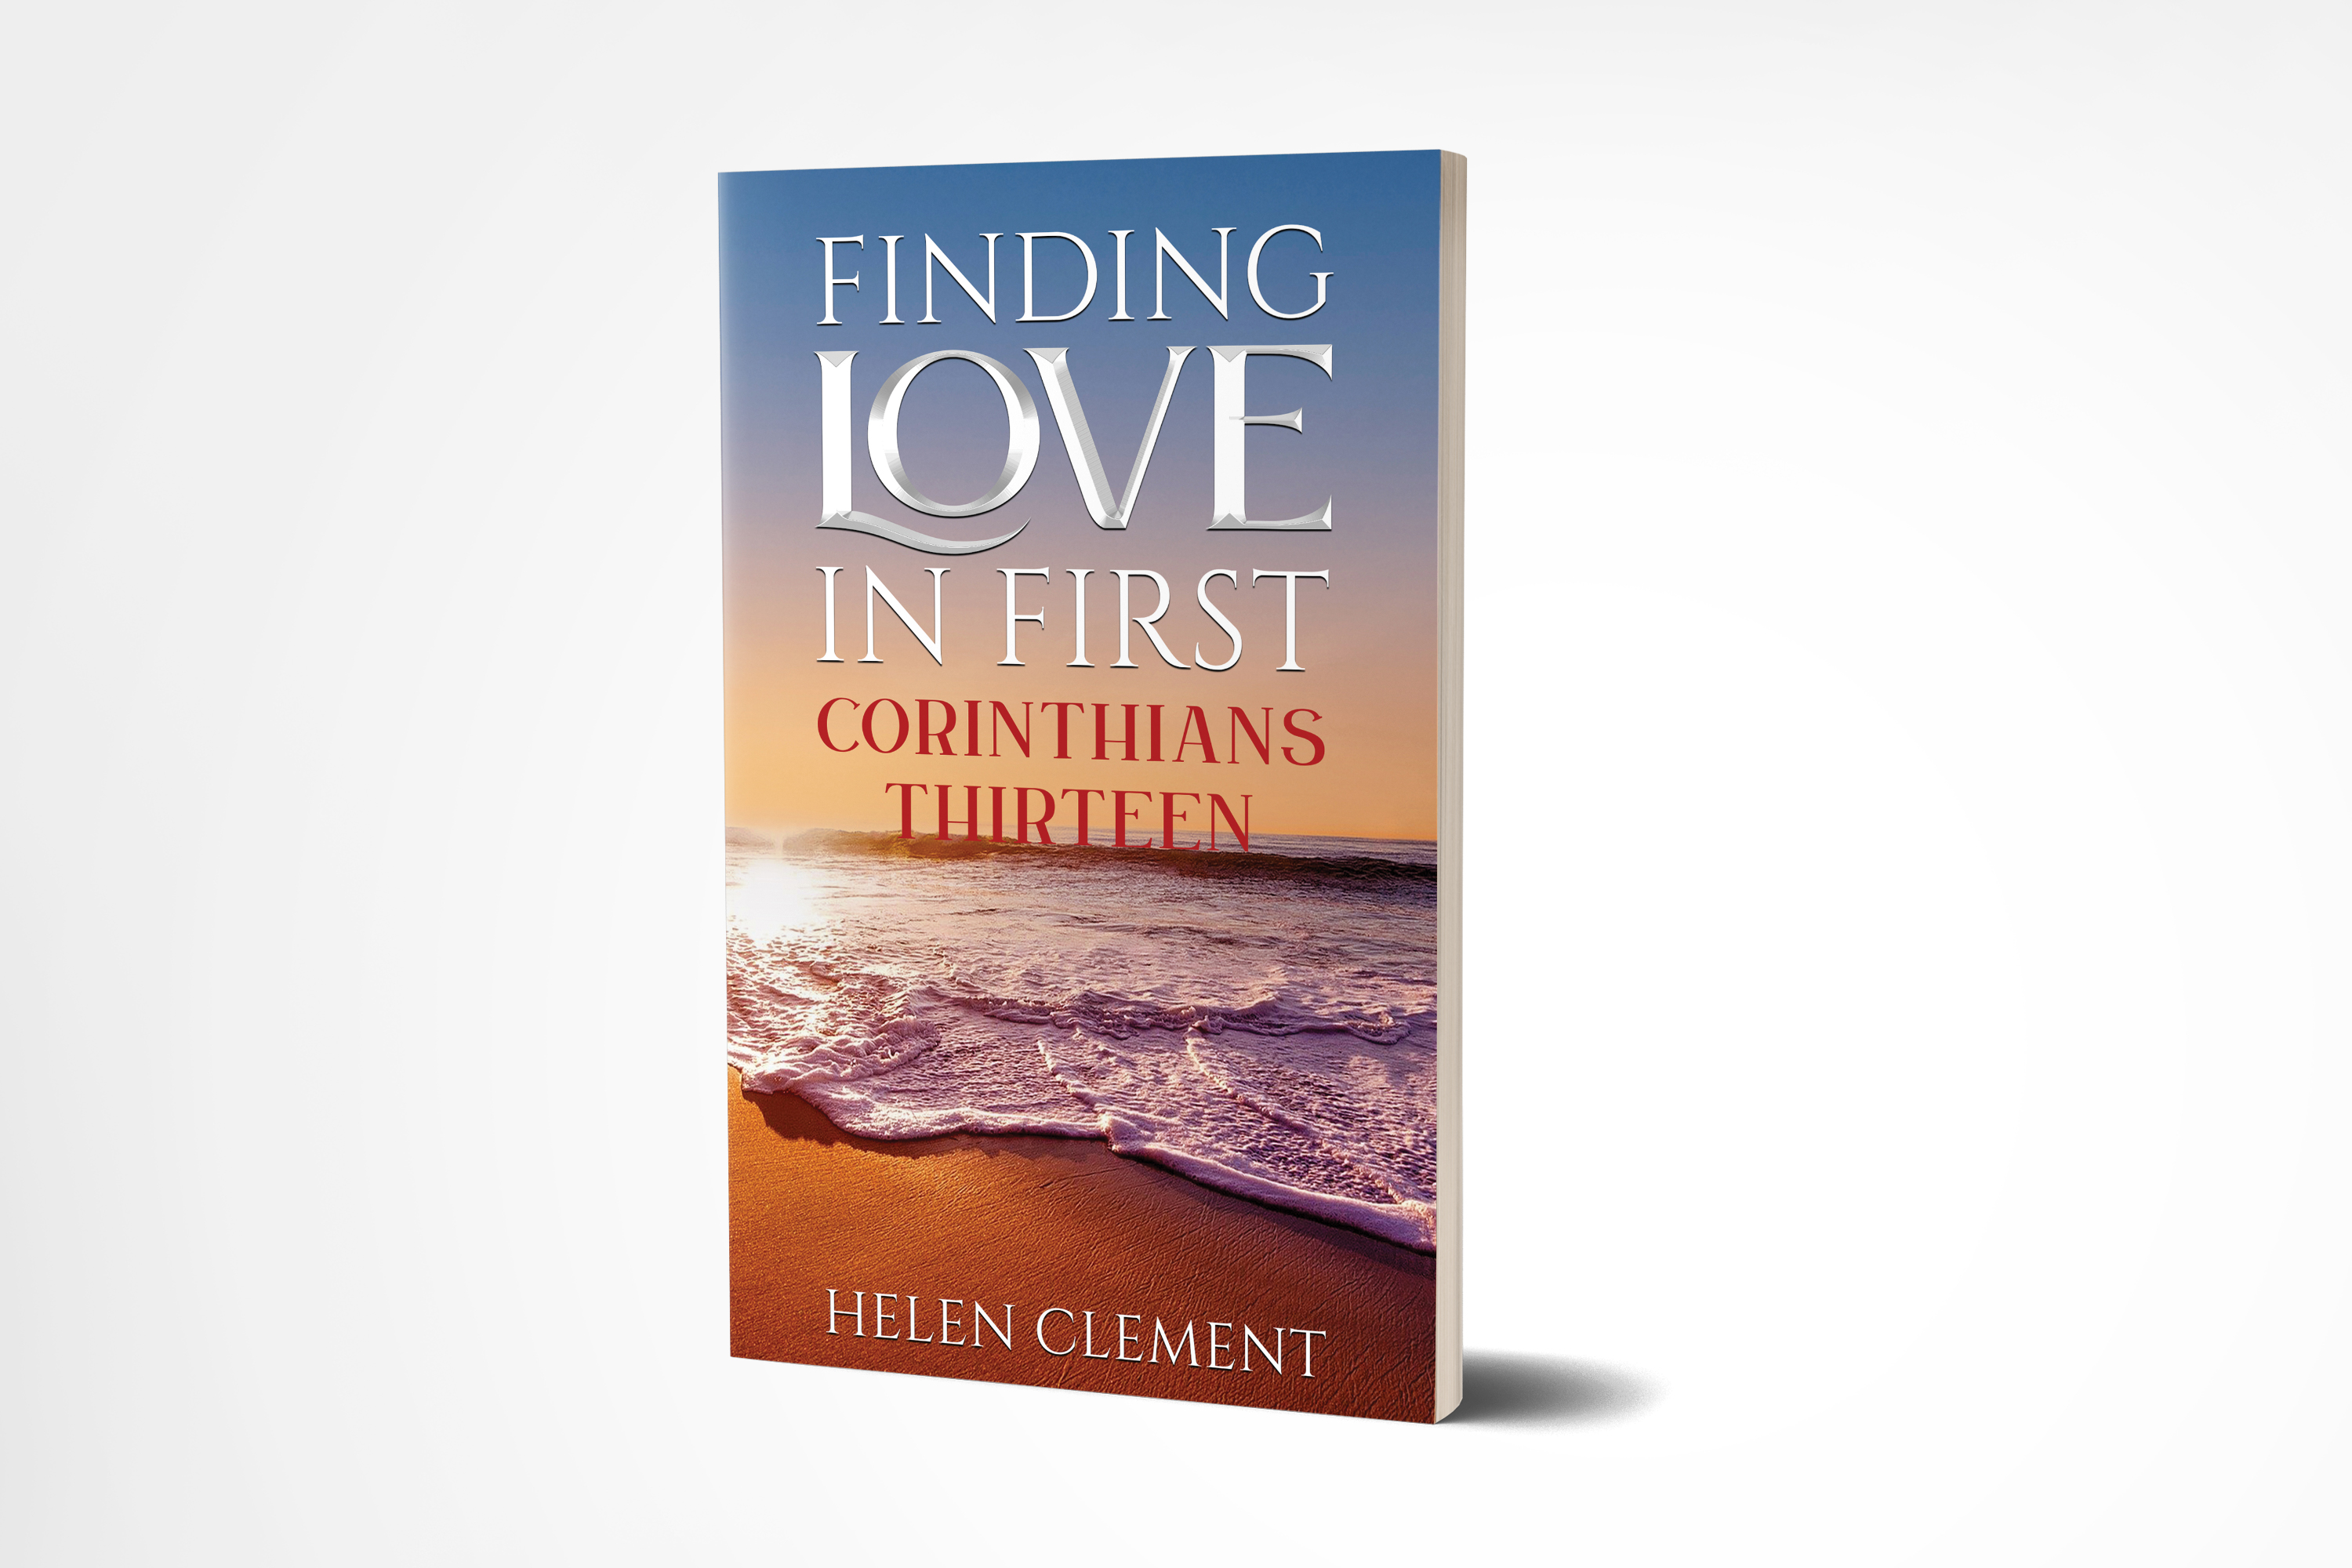 Finding Love in First Corinthians Thirteen by Helen Clement